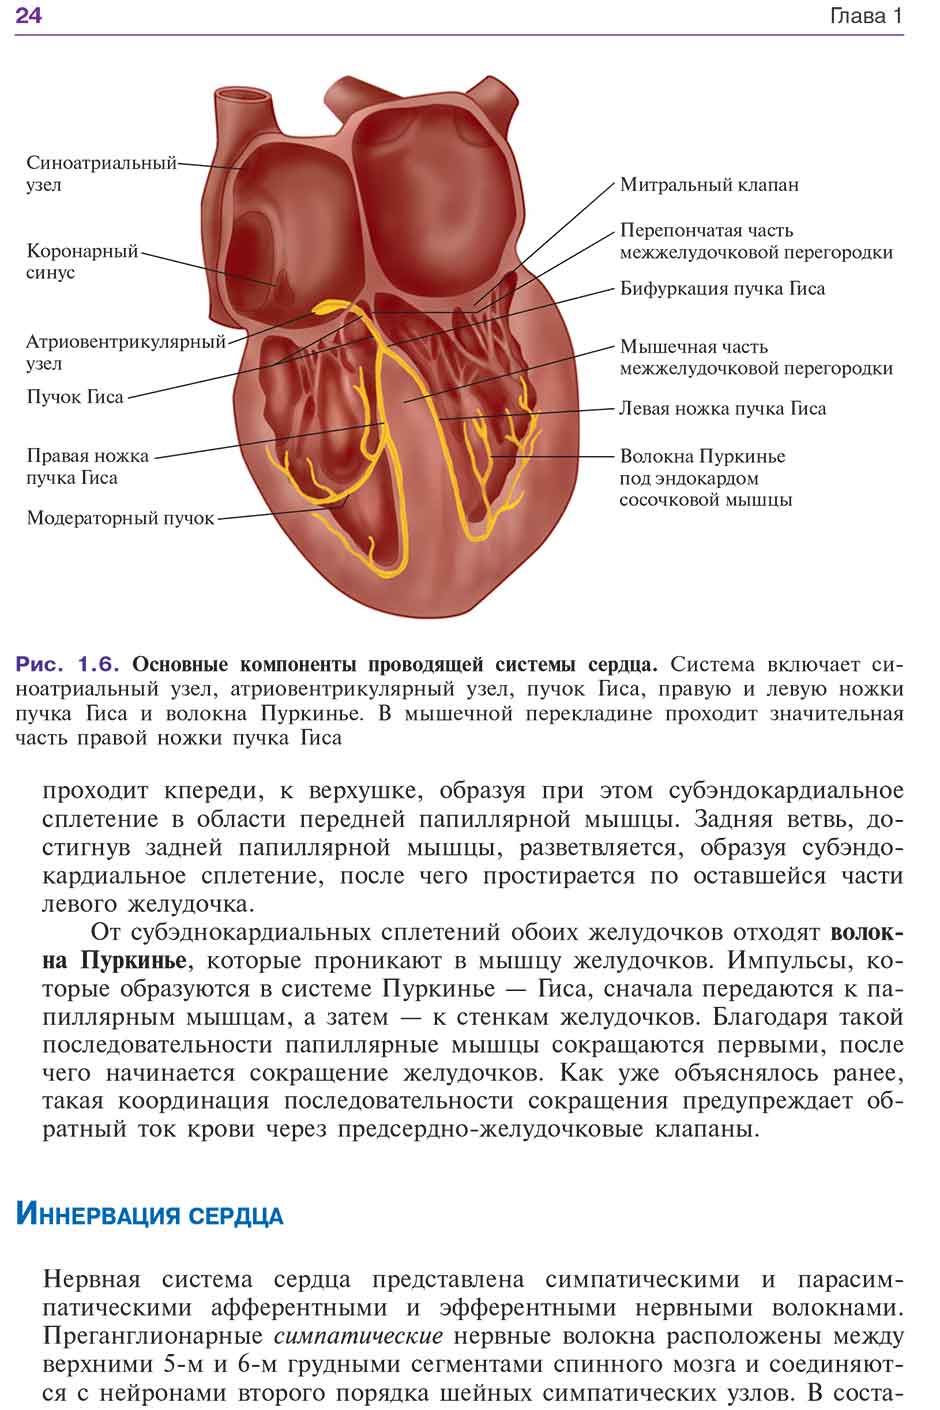 Рис. 1.6. Основные компоненты проводящей системы сердца.